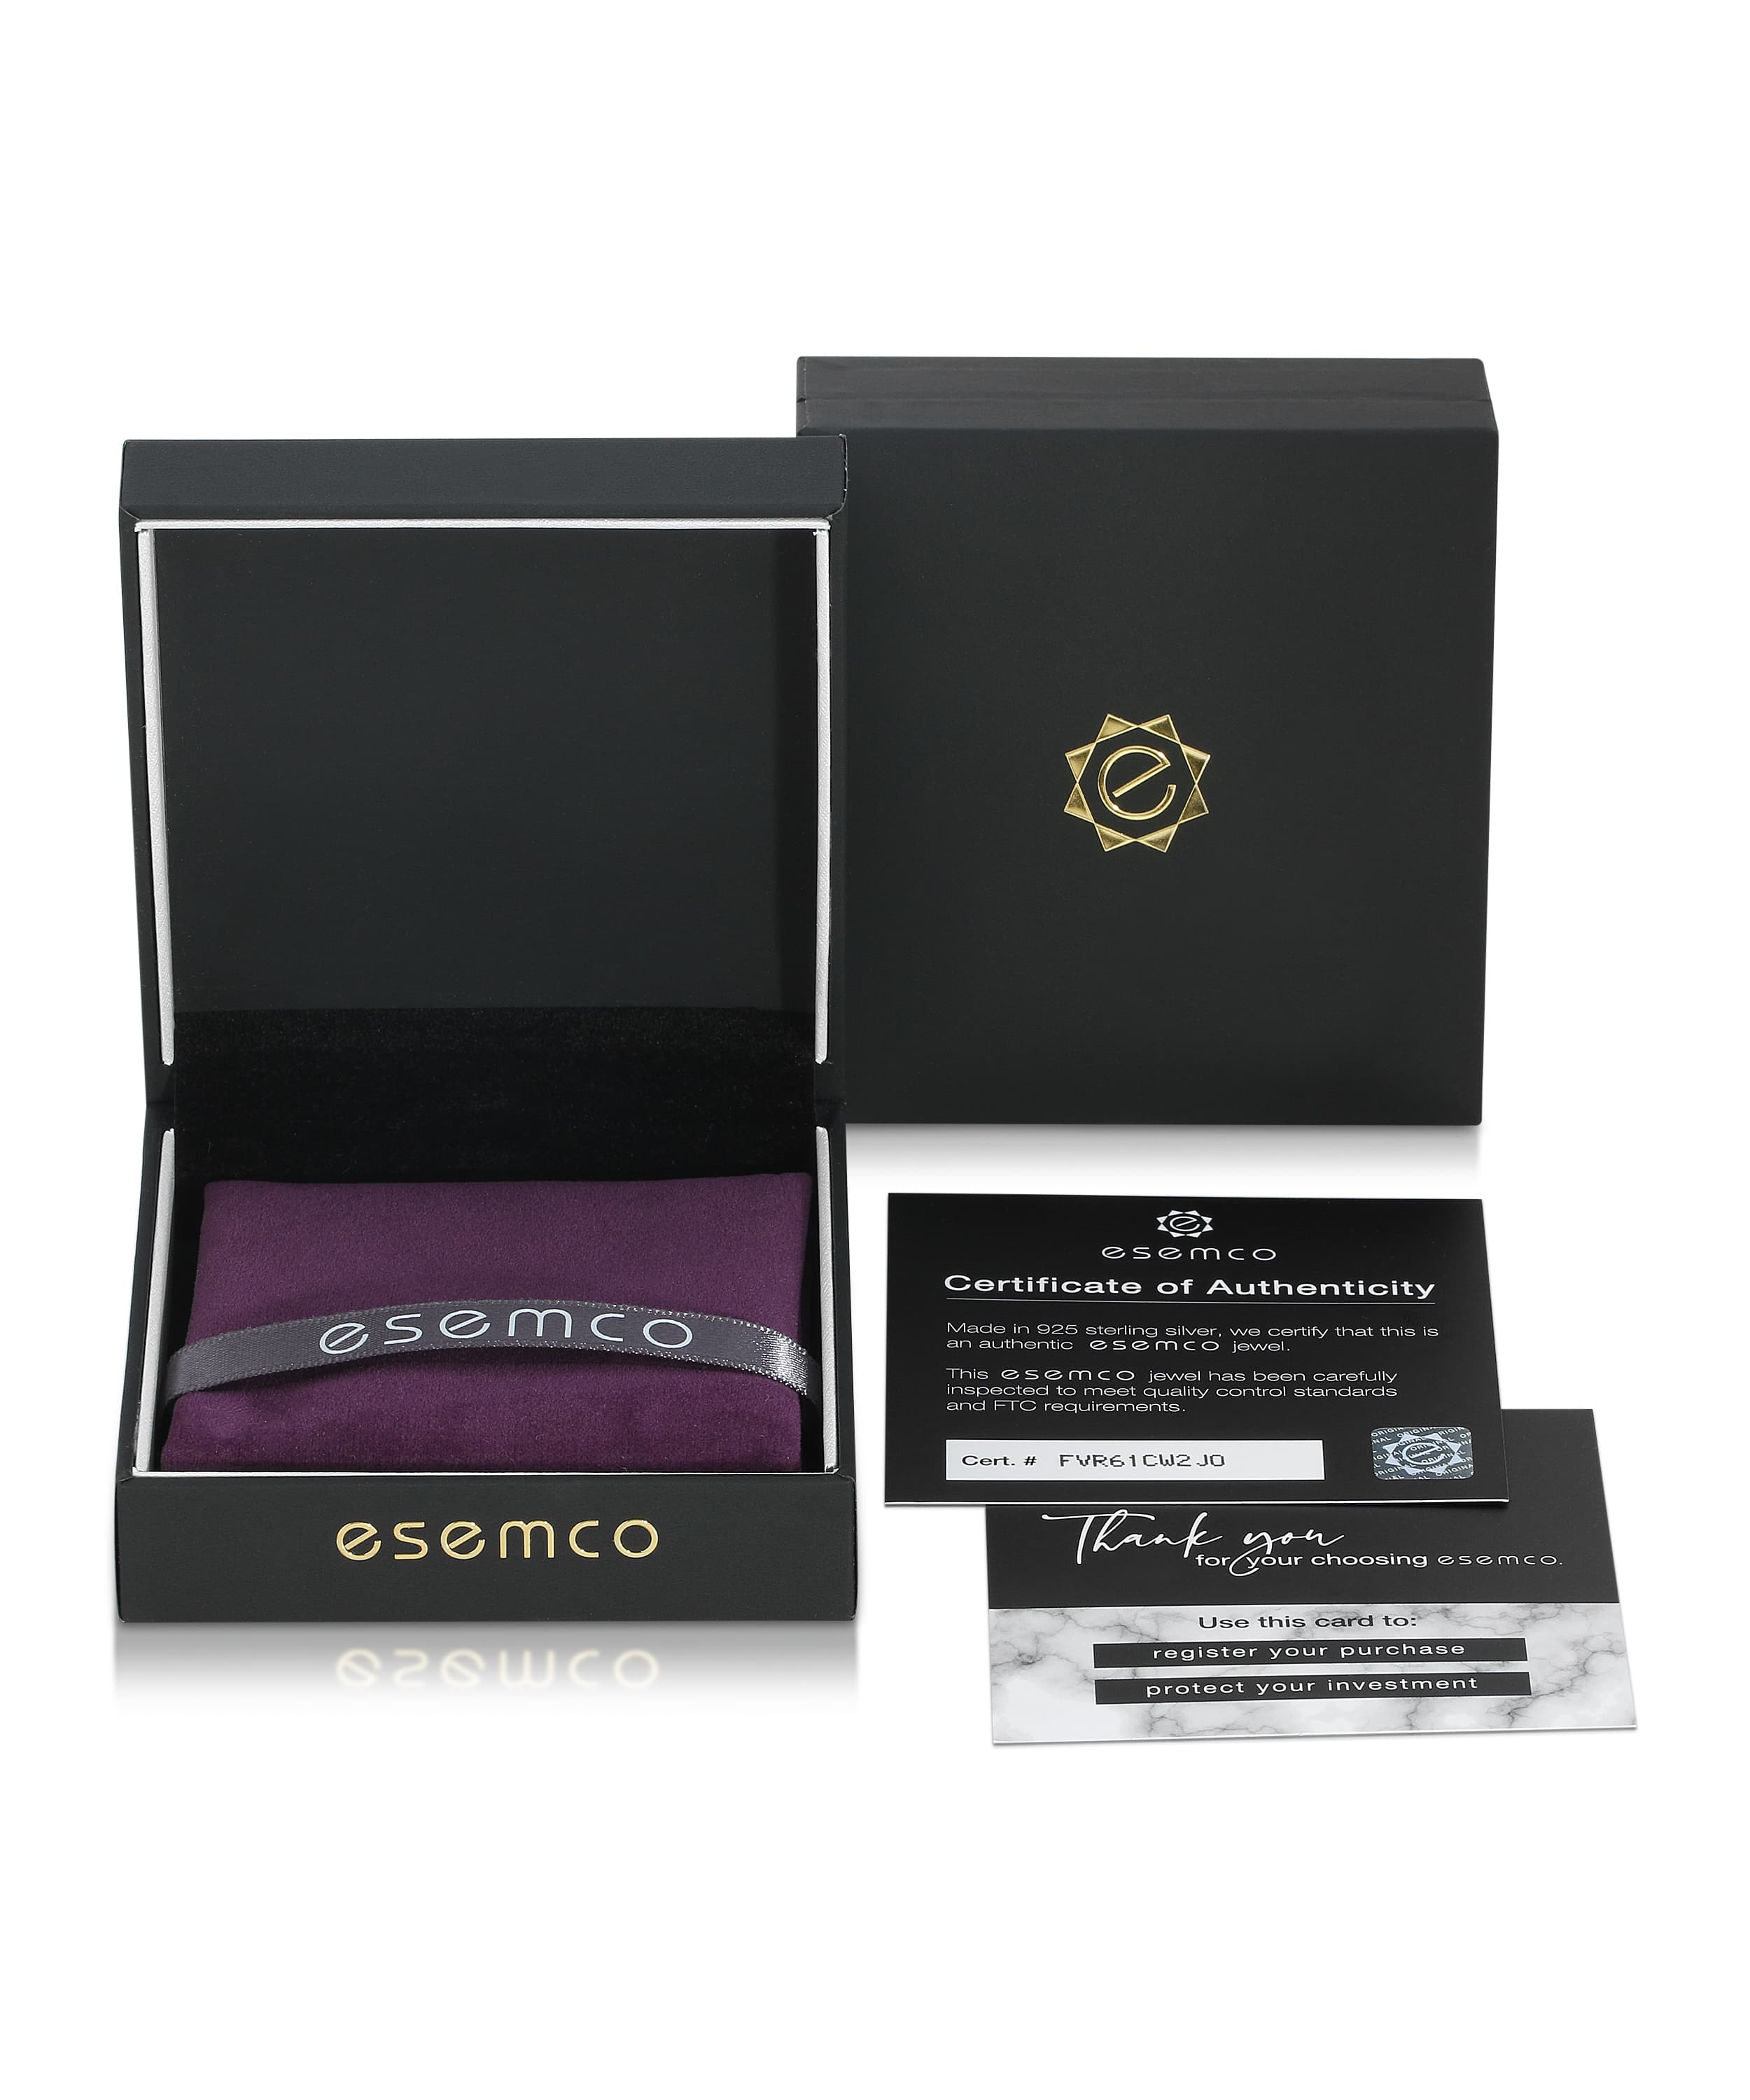 ESEMCO Diamond 18k White Gold Letter K Initial Open Ring View 4